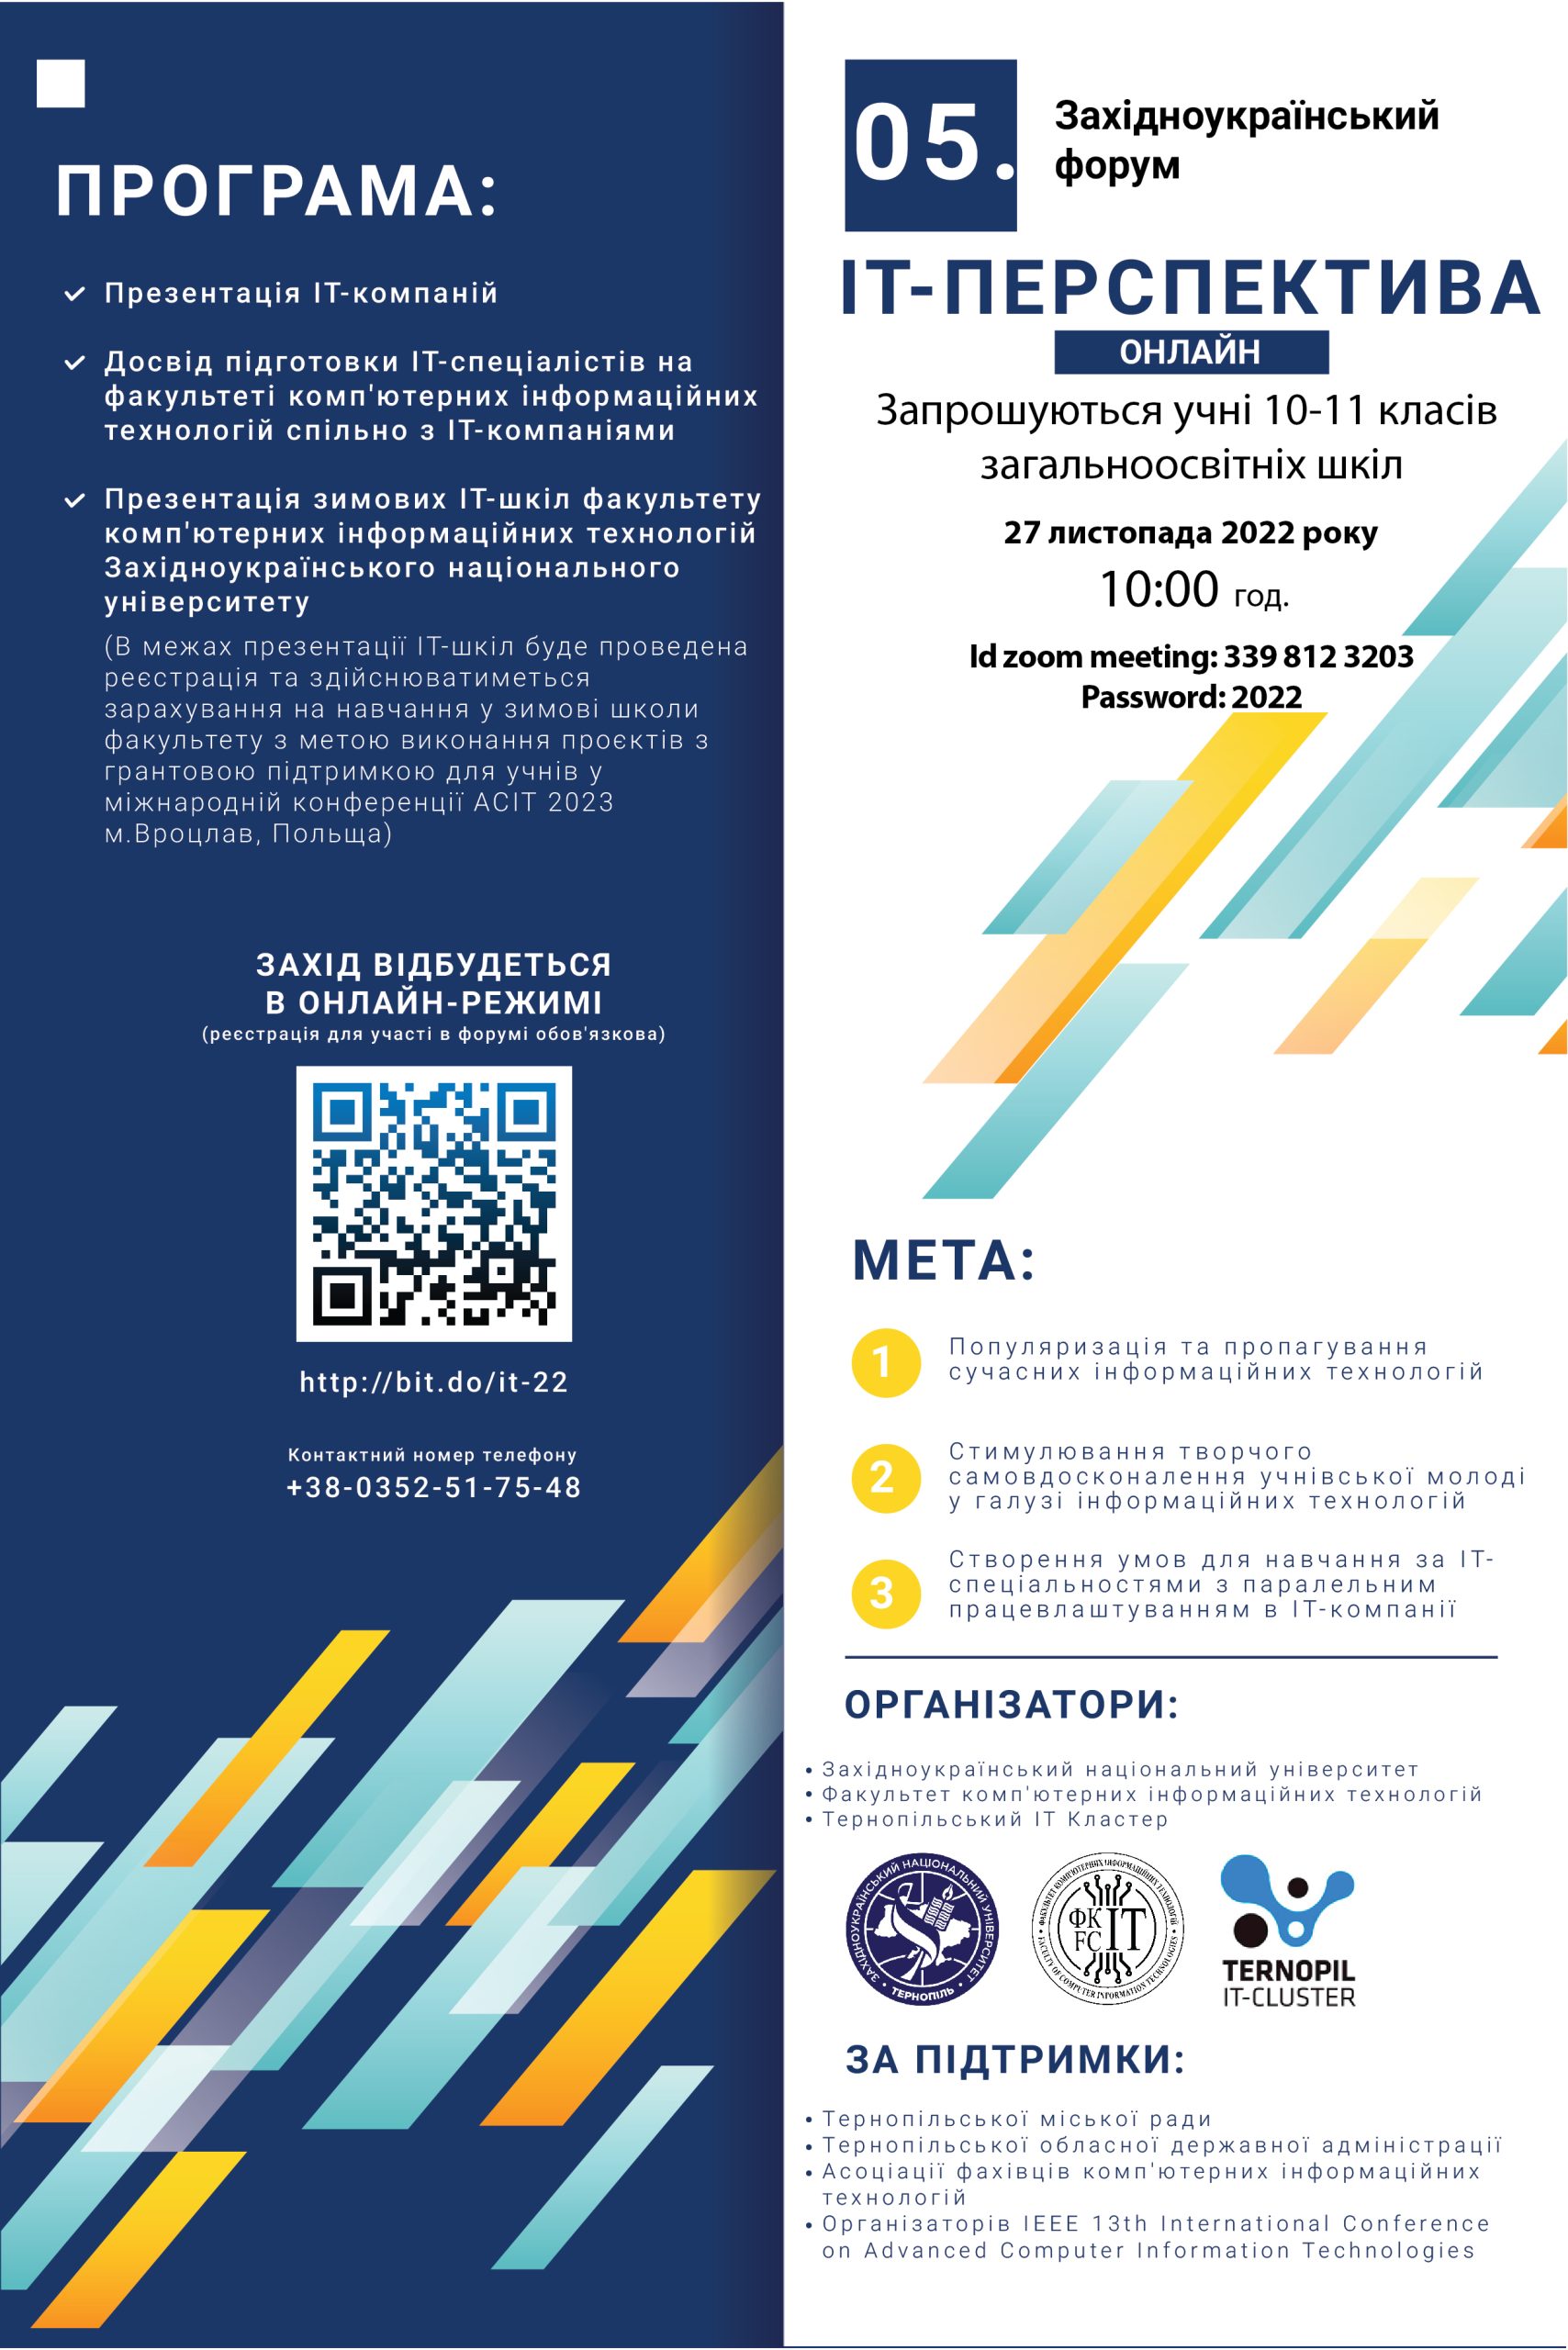 Запрошуємо учнівську молодь взяти участь у 5 Західноукраїнському форумі «ІТ-перспектива» (онлайн)